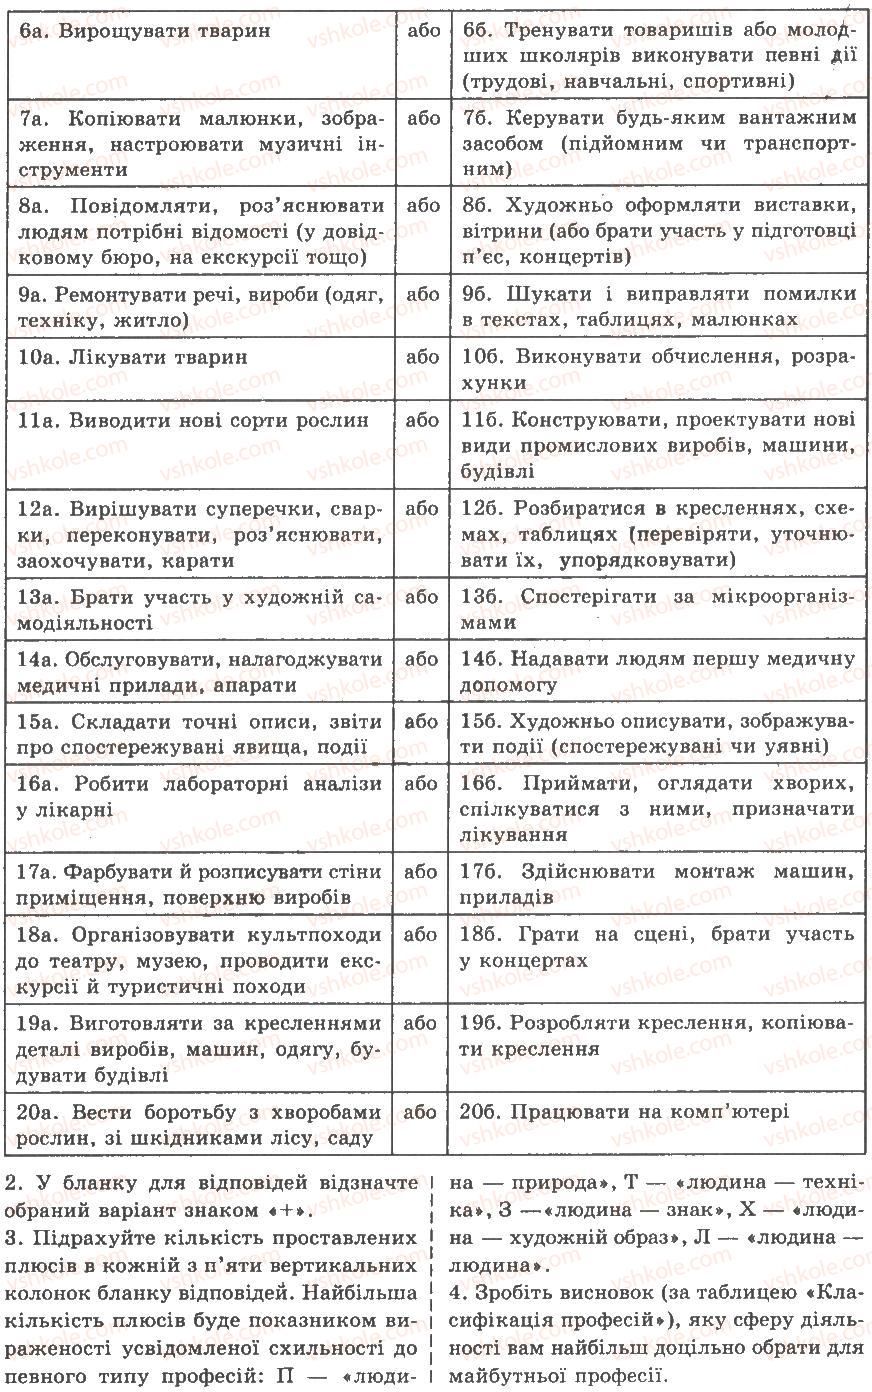 9-biologiya-av-stepanyuk-nj-mischuk-tv-gladyuk-2009--praktichni-roboti-ПР10-rnd83.jpg